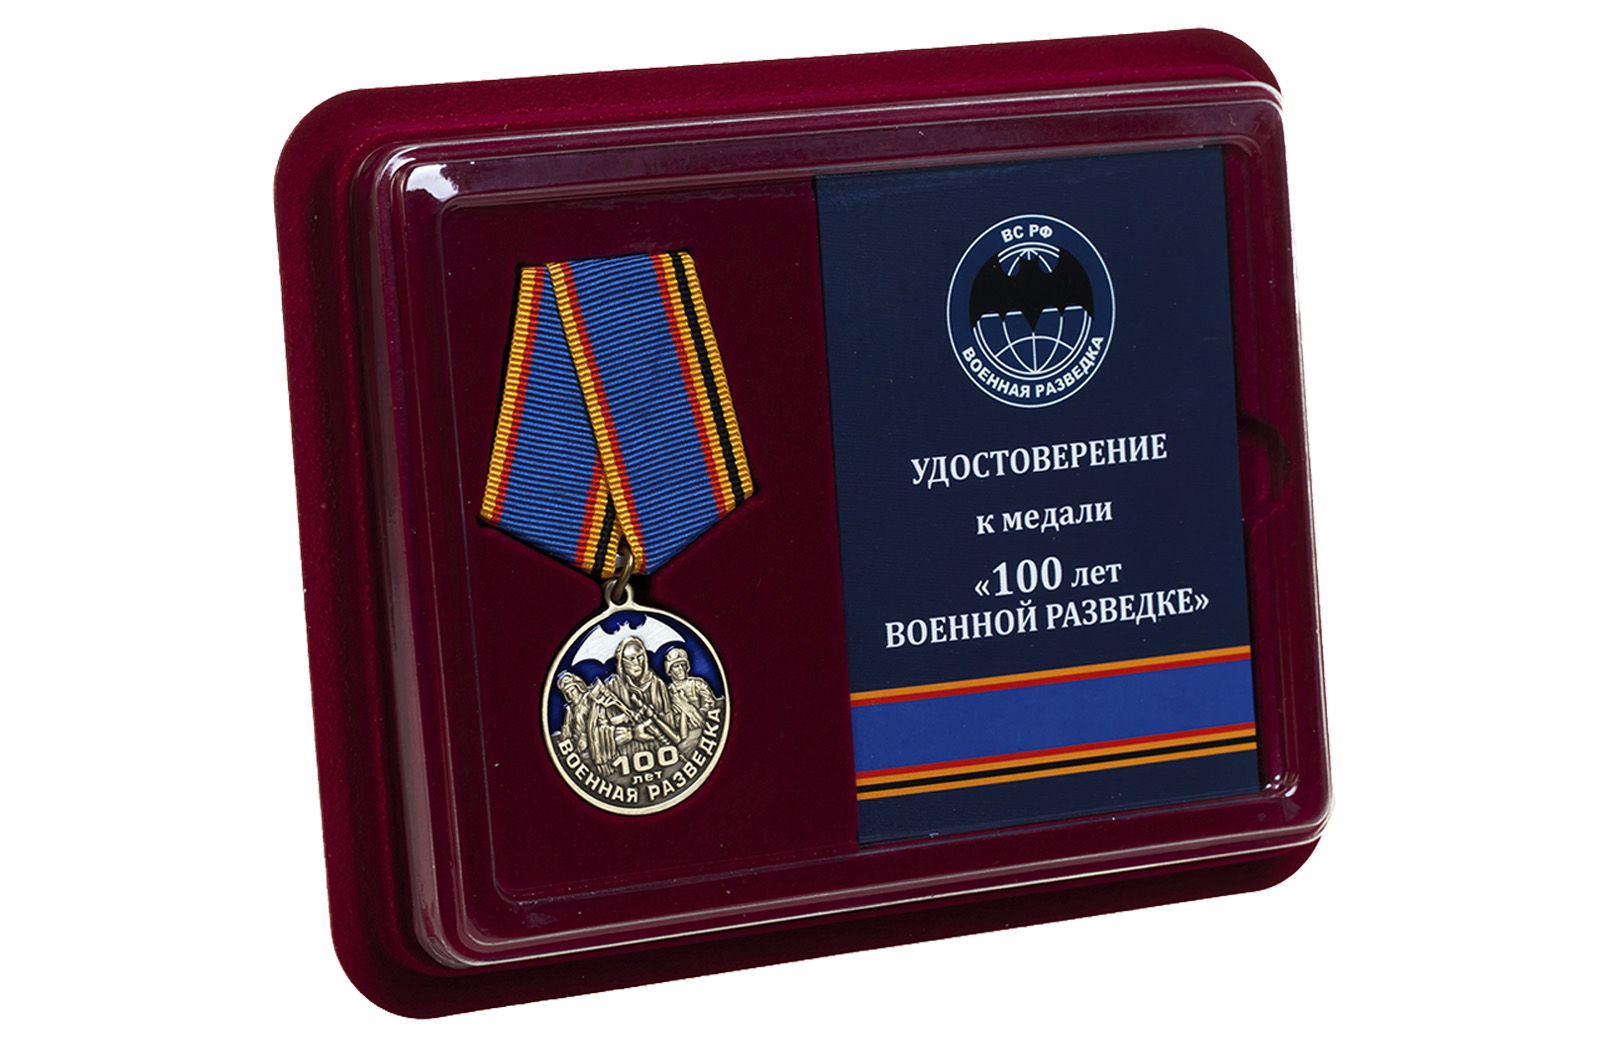 Медаль "Военная разведка. 100 лет" 